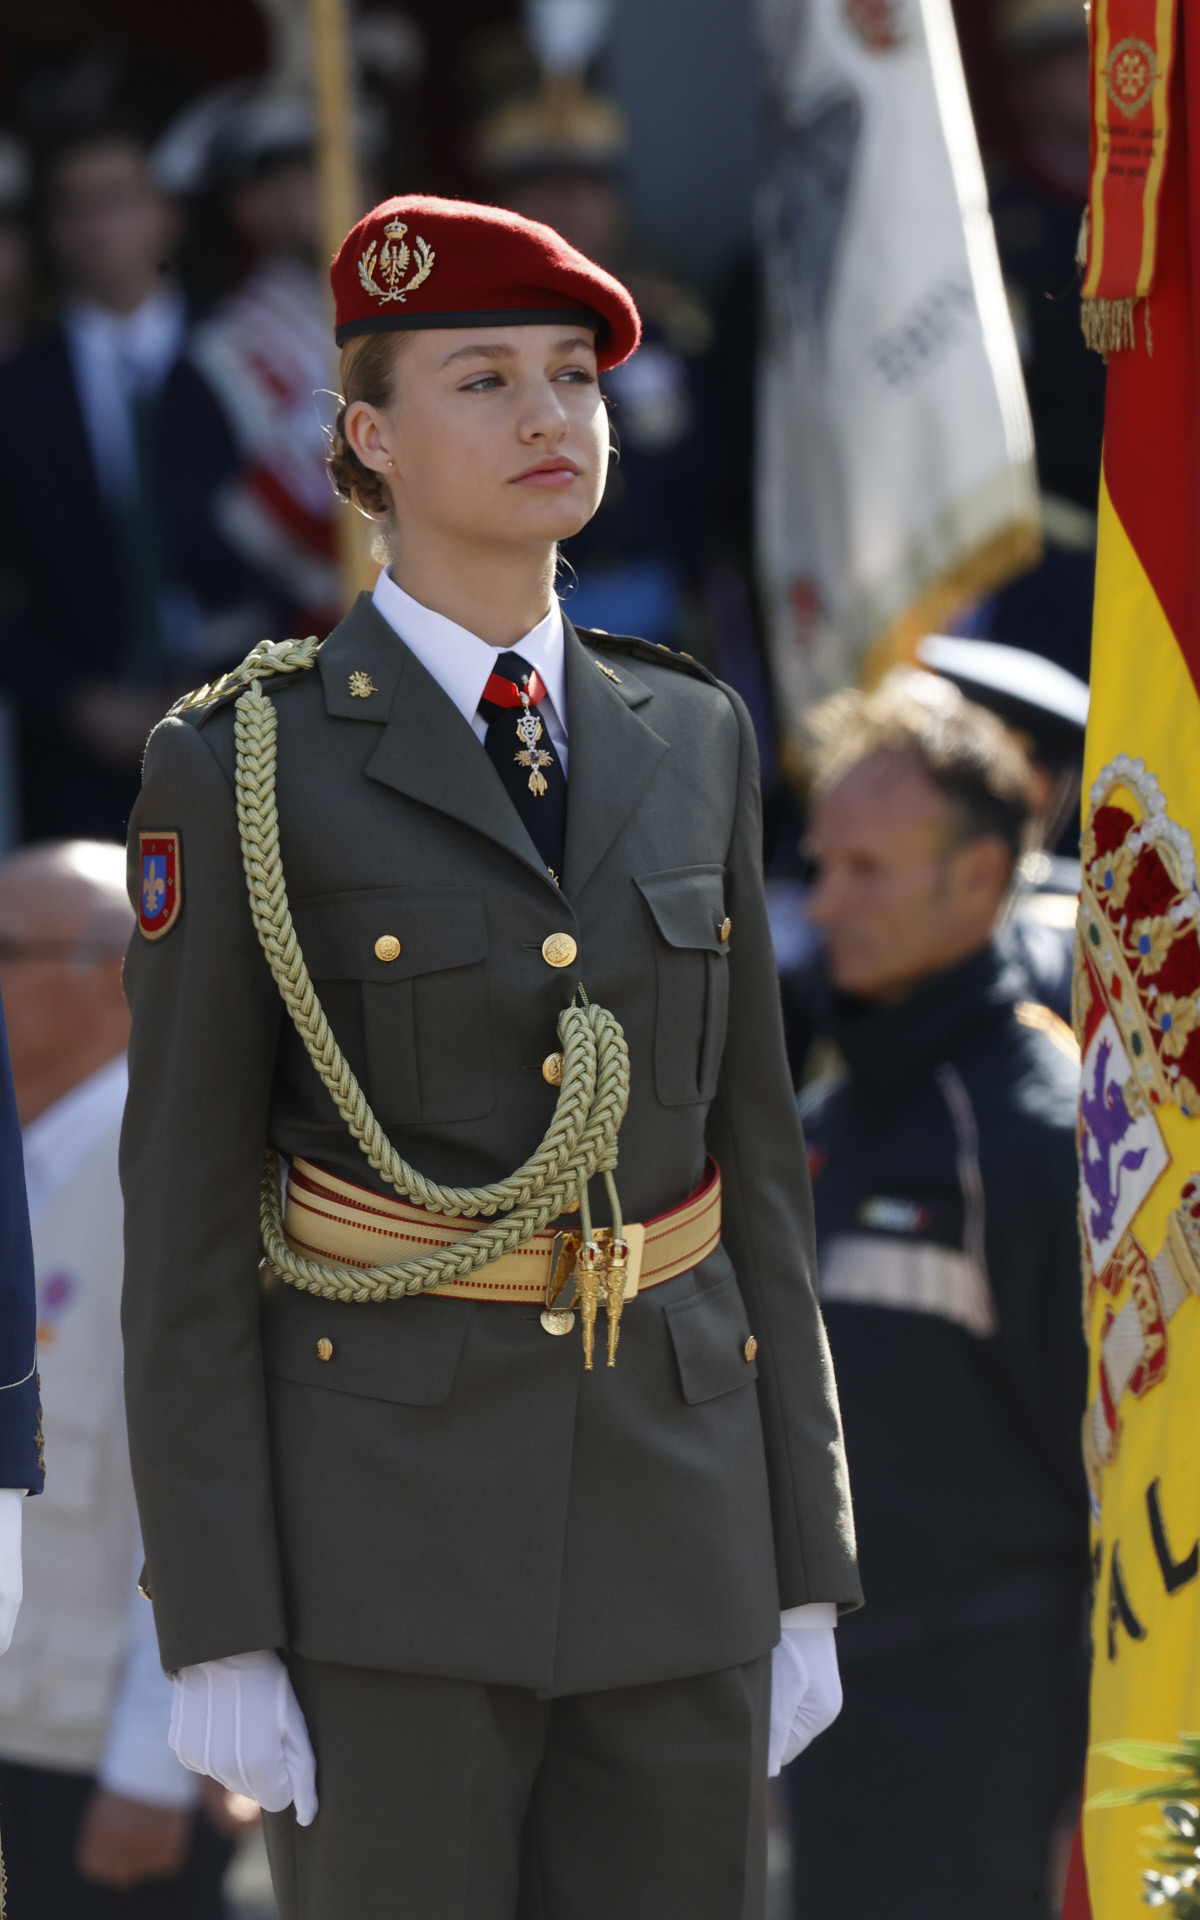 El uniforme de gala de la princesa Leonor el 12 de octubre.